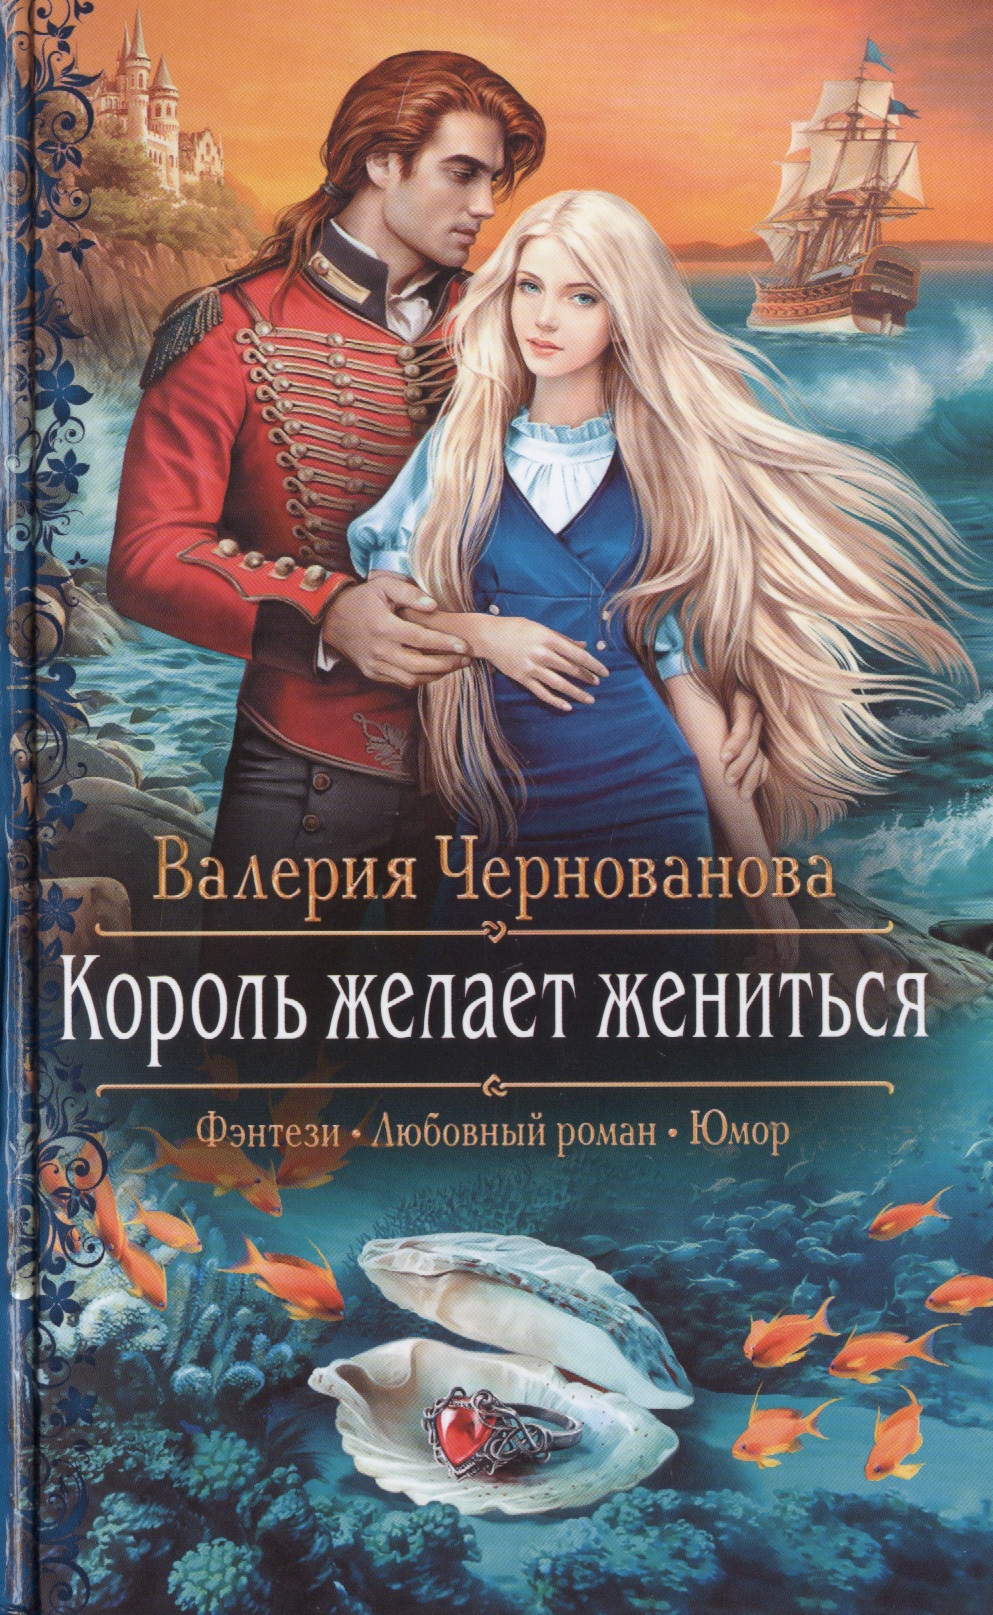 Король книги автора. Король желает жениться Чернованова. Обложки книг фэнтези. Любовное фэнтези.